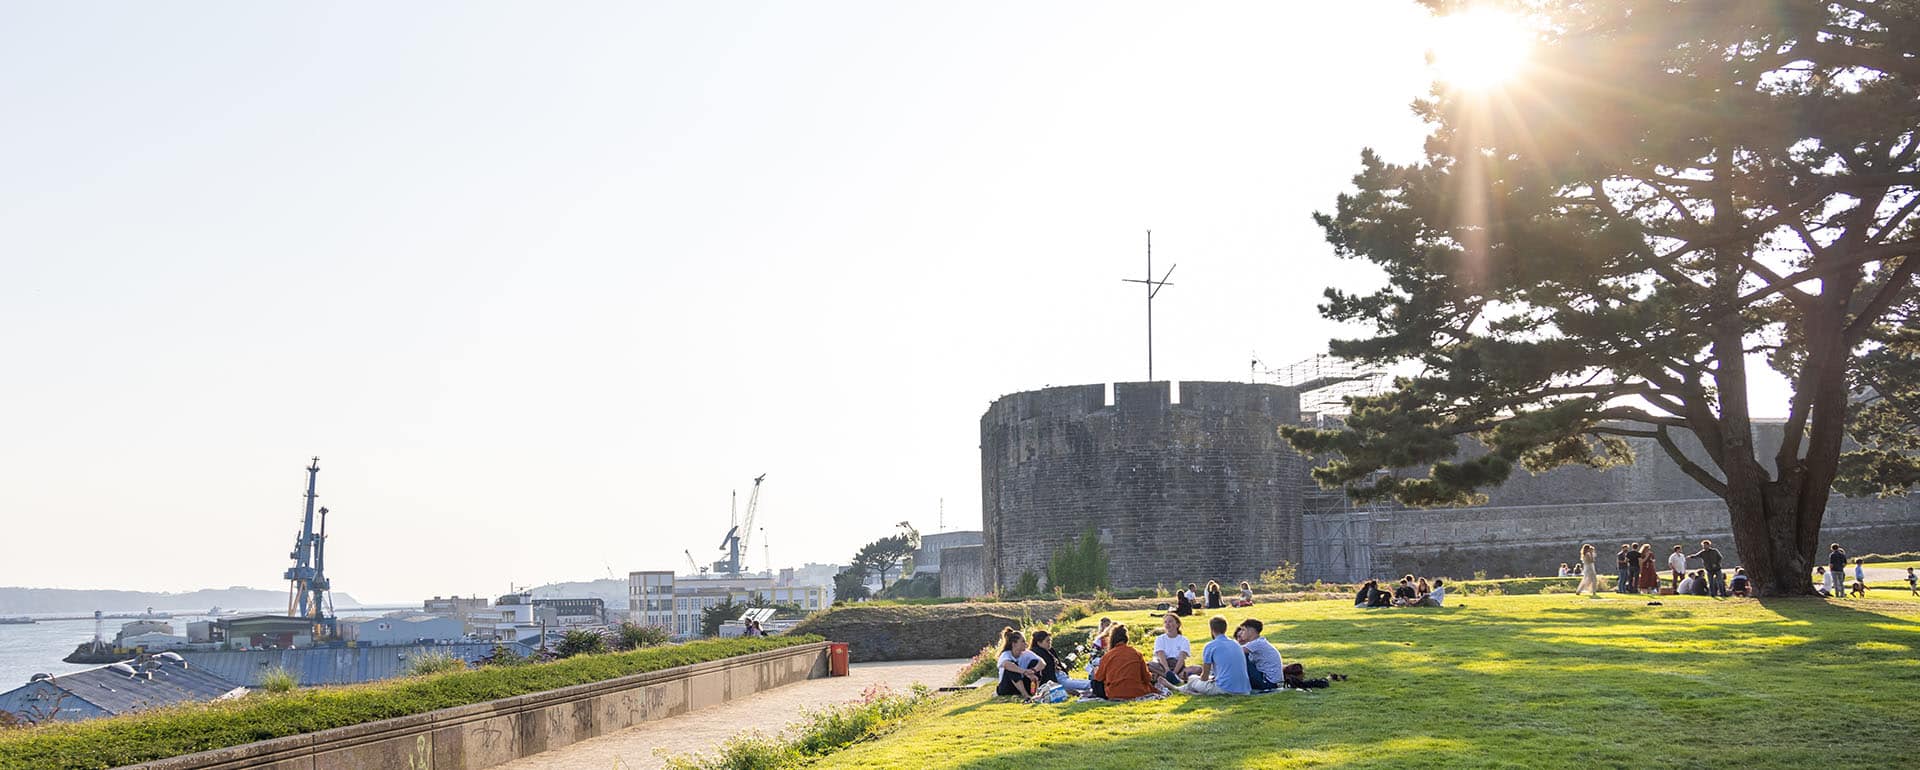 Picnic overlooking Brest castle and harbour - Musée National de la Marine